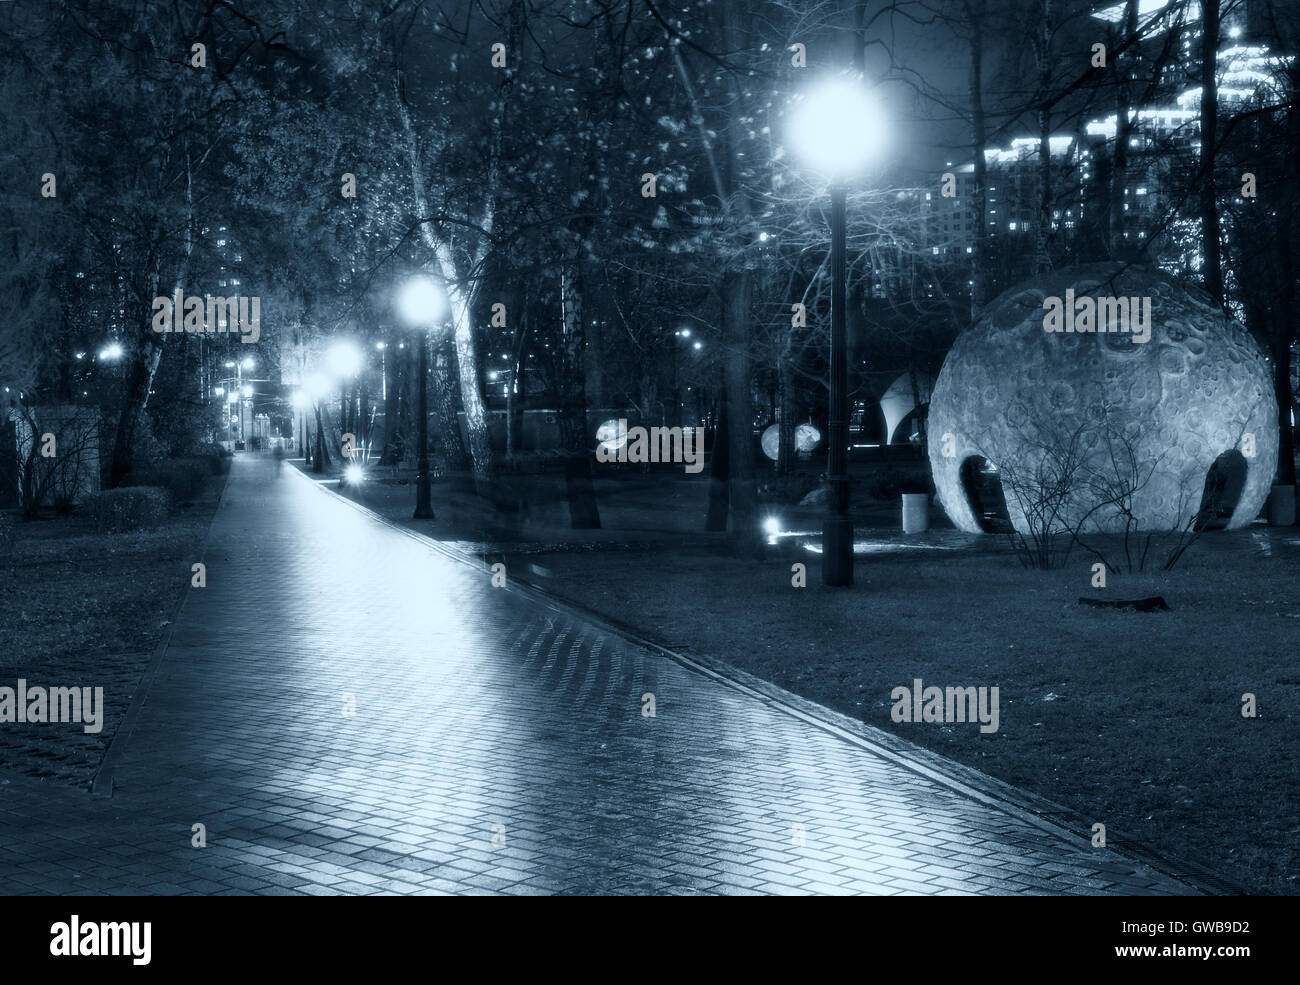 Park nuit pathway : une vue d'une allée allée / / voie dans un parc allumée par lanternes / lampes / streetlight avec arbres Banque D'Images